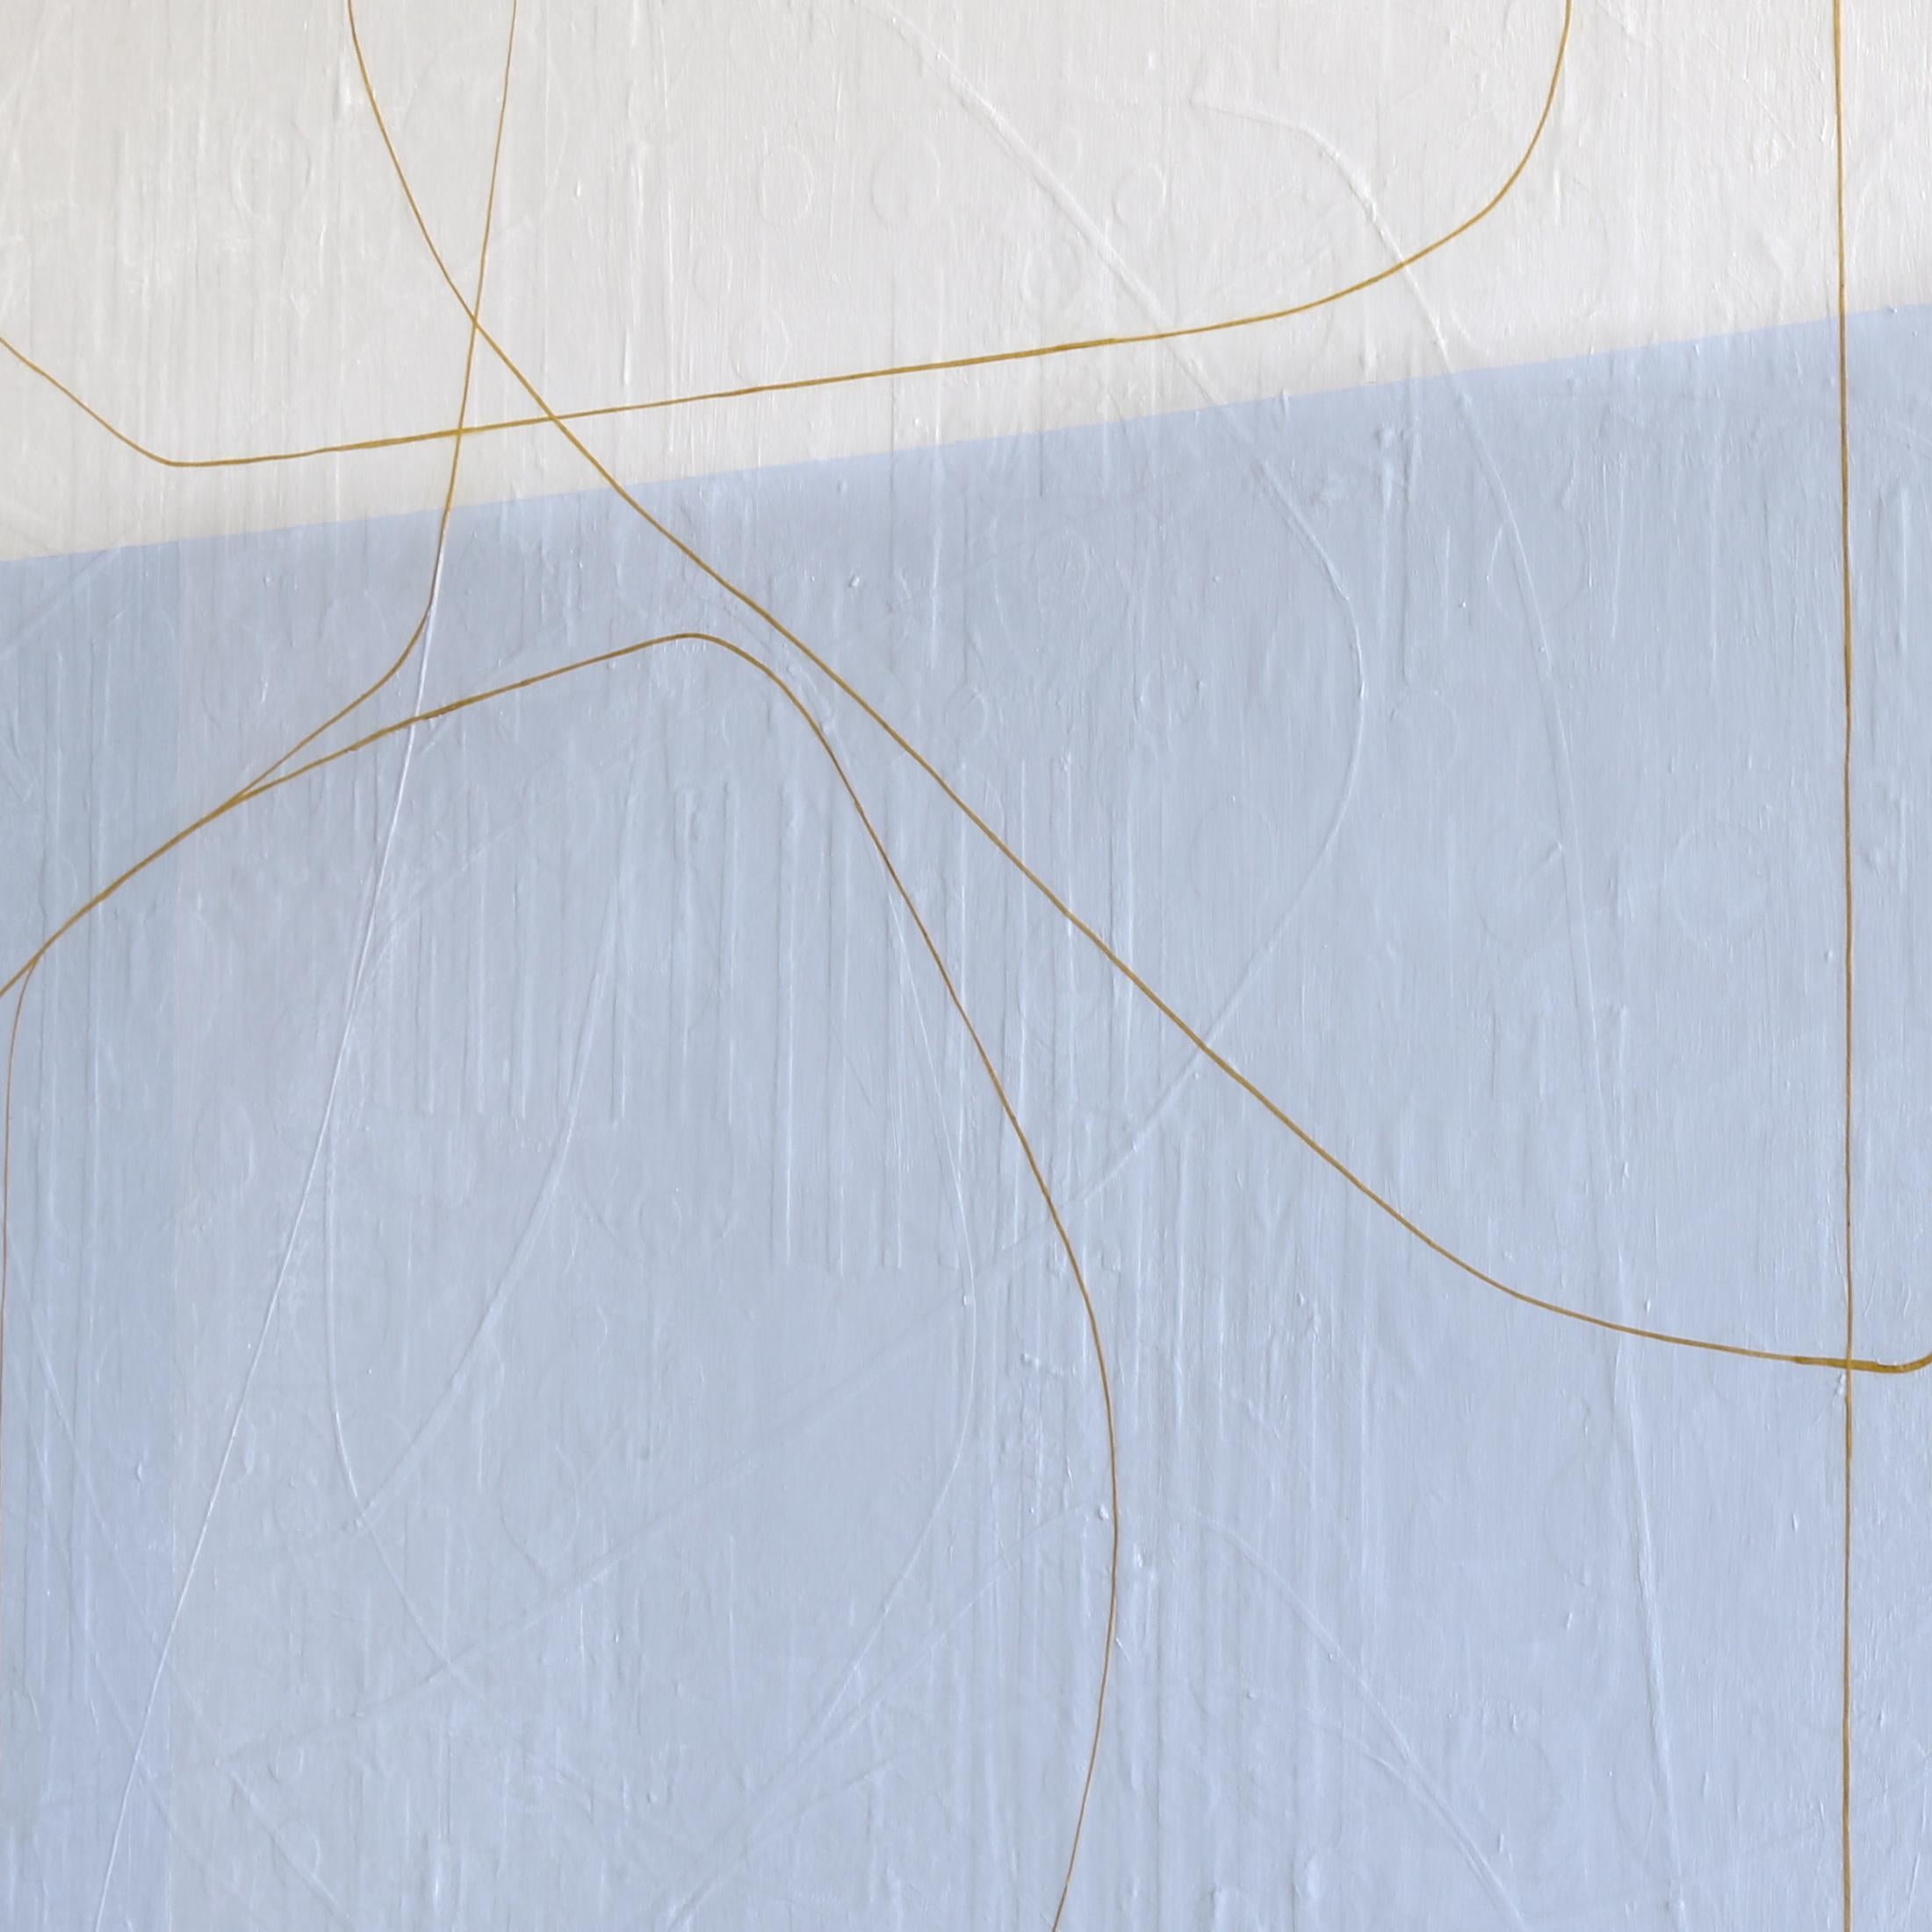 Les œuvres abstraites de Maura Segal évoquent une délicate simplicité. Des blocs de couleur s'étalent langoureusement derrière de fines lignes sinueuses et des courbes fluides et libres. Pourtant, en y regardant de plus près, le savoir-faire de